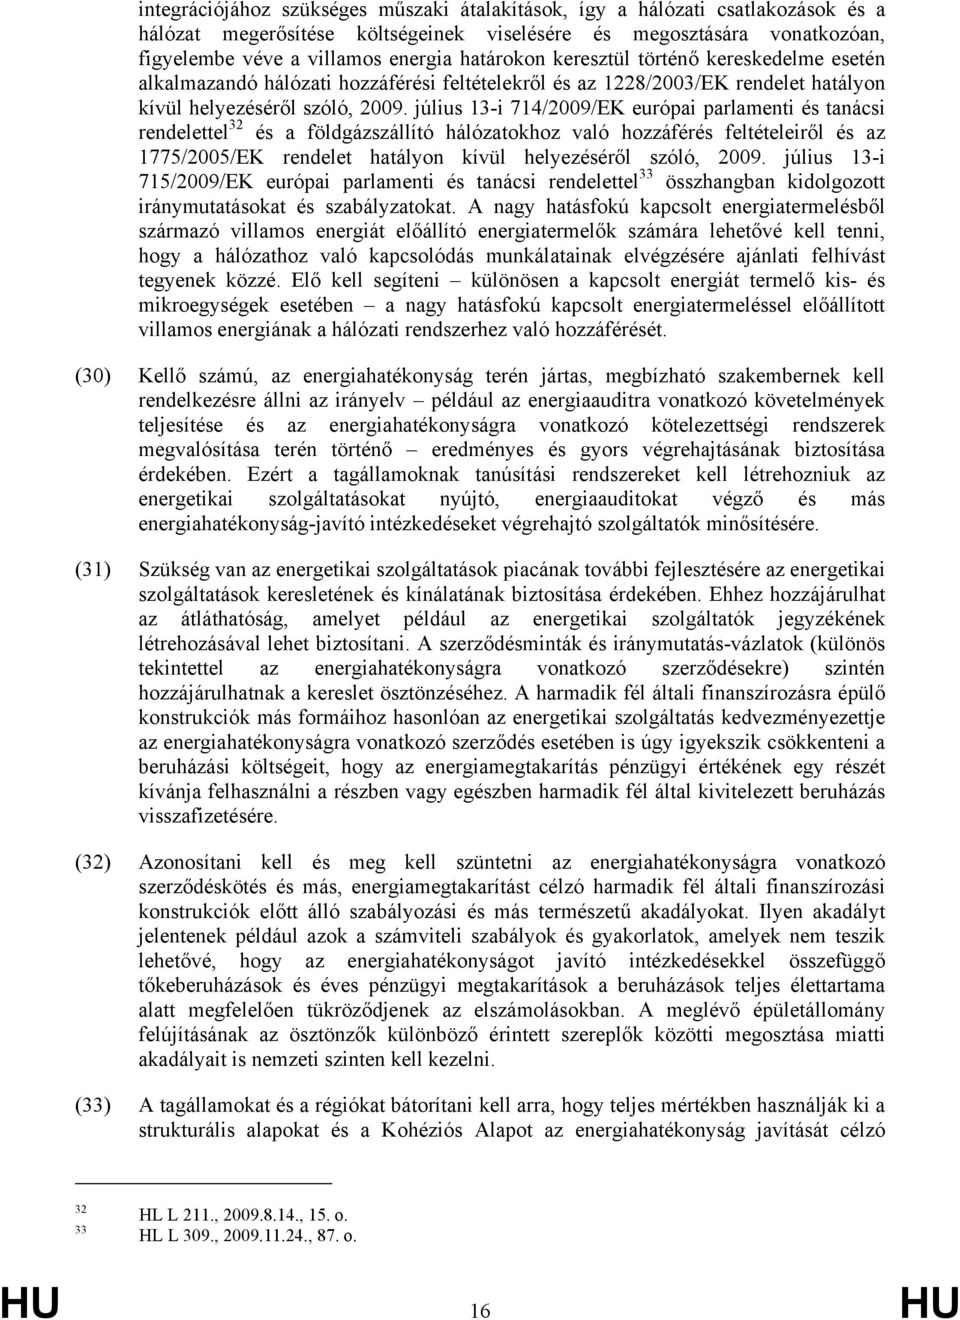 július 13-i 714/2009/EK európai parlamenti és tanácsi rendelettel 32 és a földgázszállító hálózatokhoz való hozzáférés feltételeiről és az 1775/2005/EK rendelet hatályon kívül helyezéséről szóló,